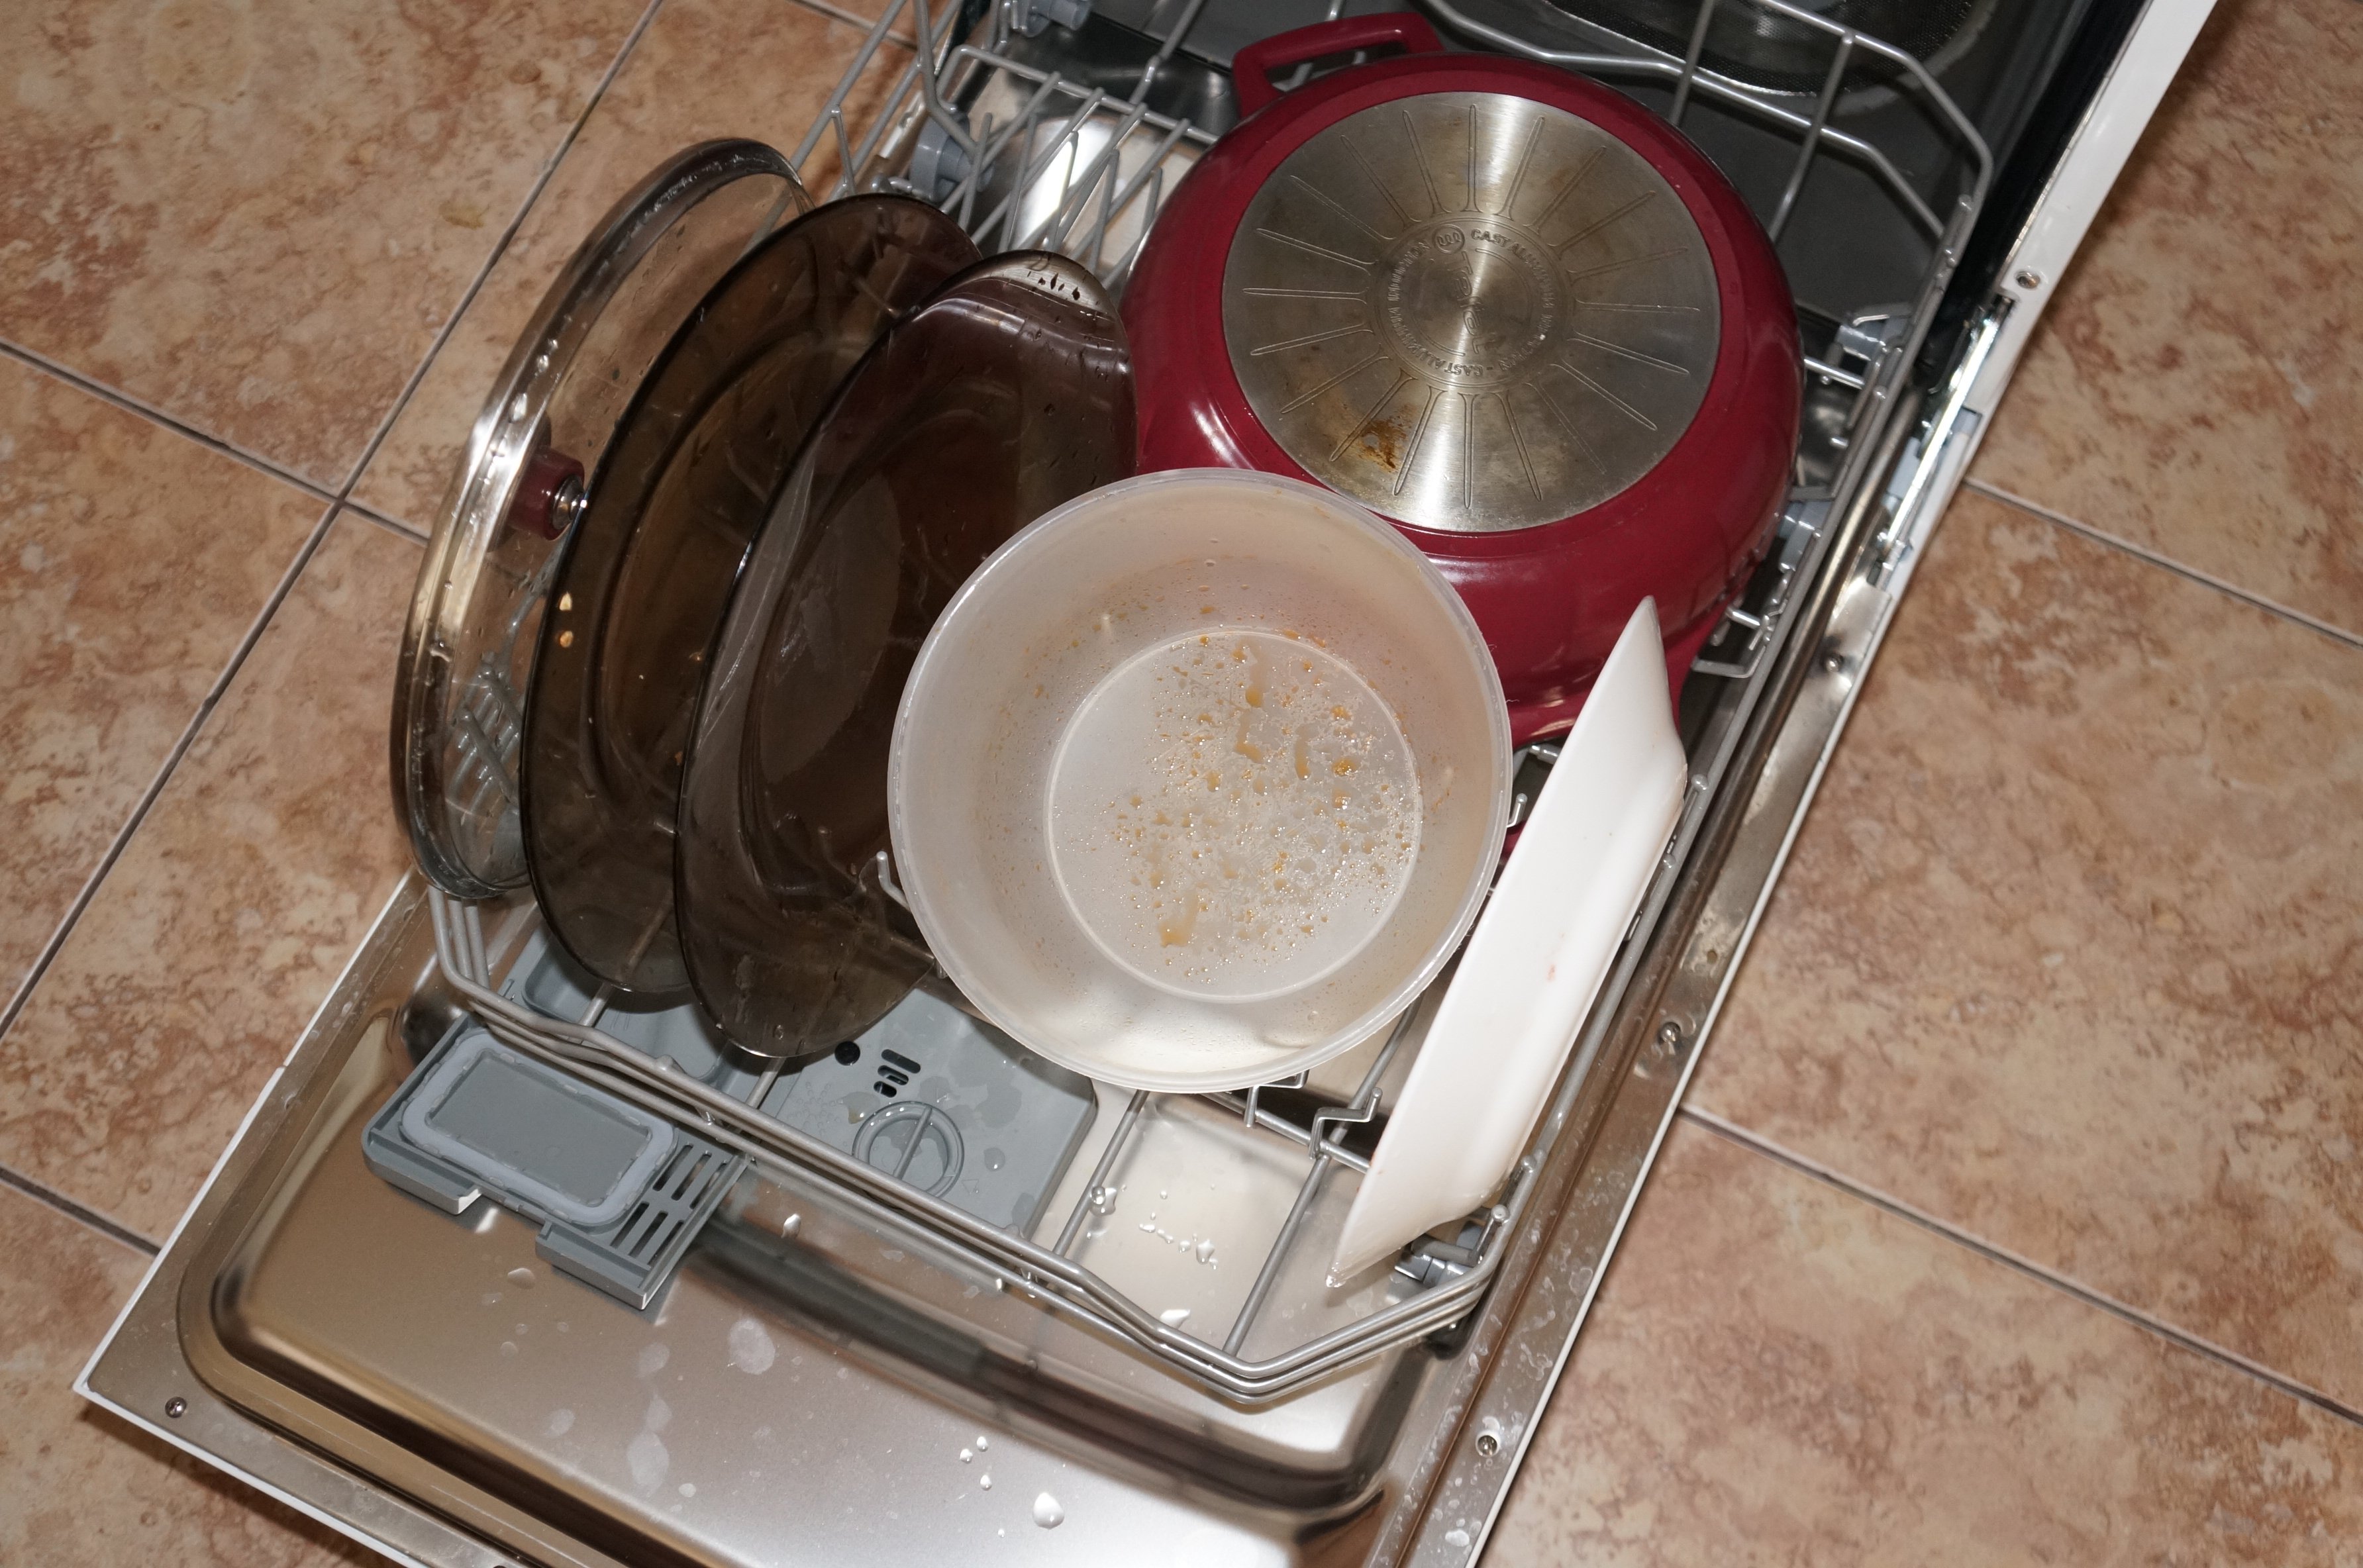 Кастрюля можно мыть в посудомоечной машине. Кастрюля в посудомоечной машине. Посудомоечная машина для кастрюль и сковородок. Кастрюли в посудомойке. Посуда в посудомойке.